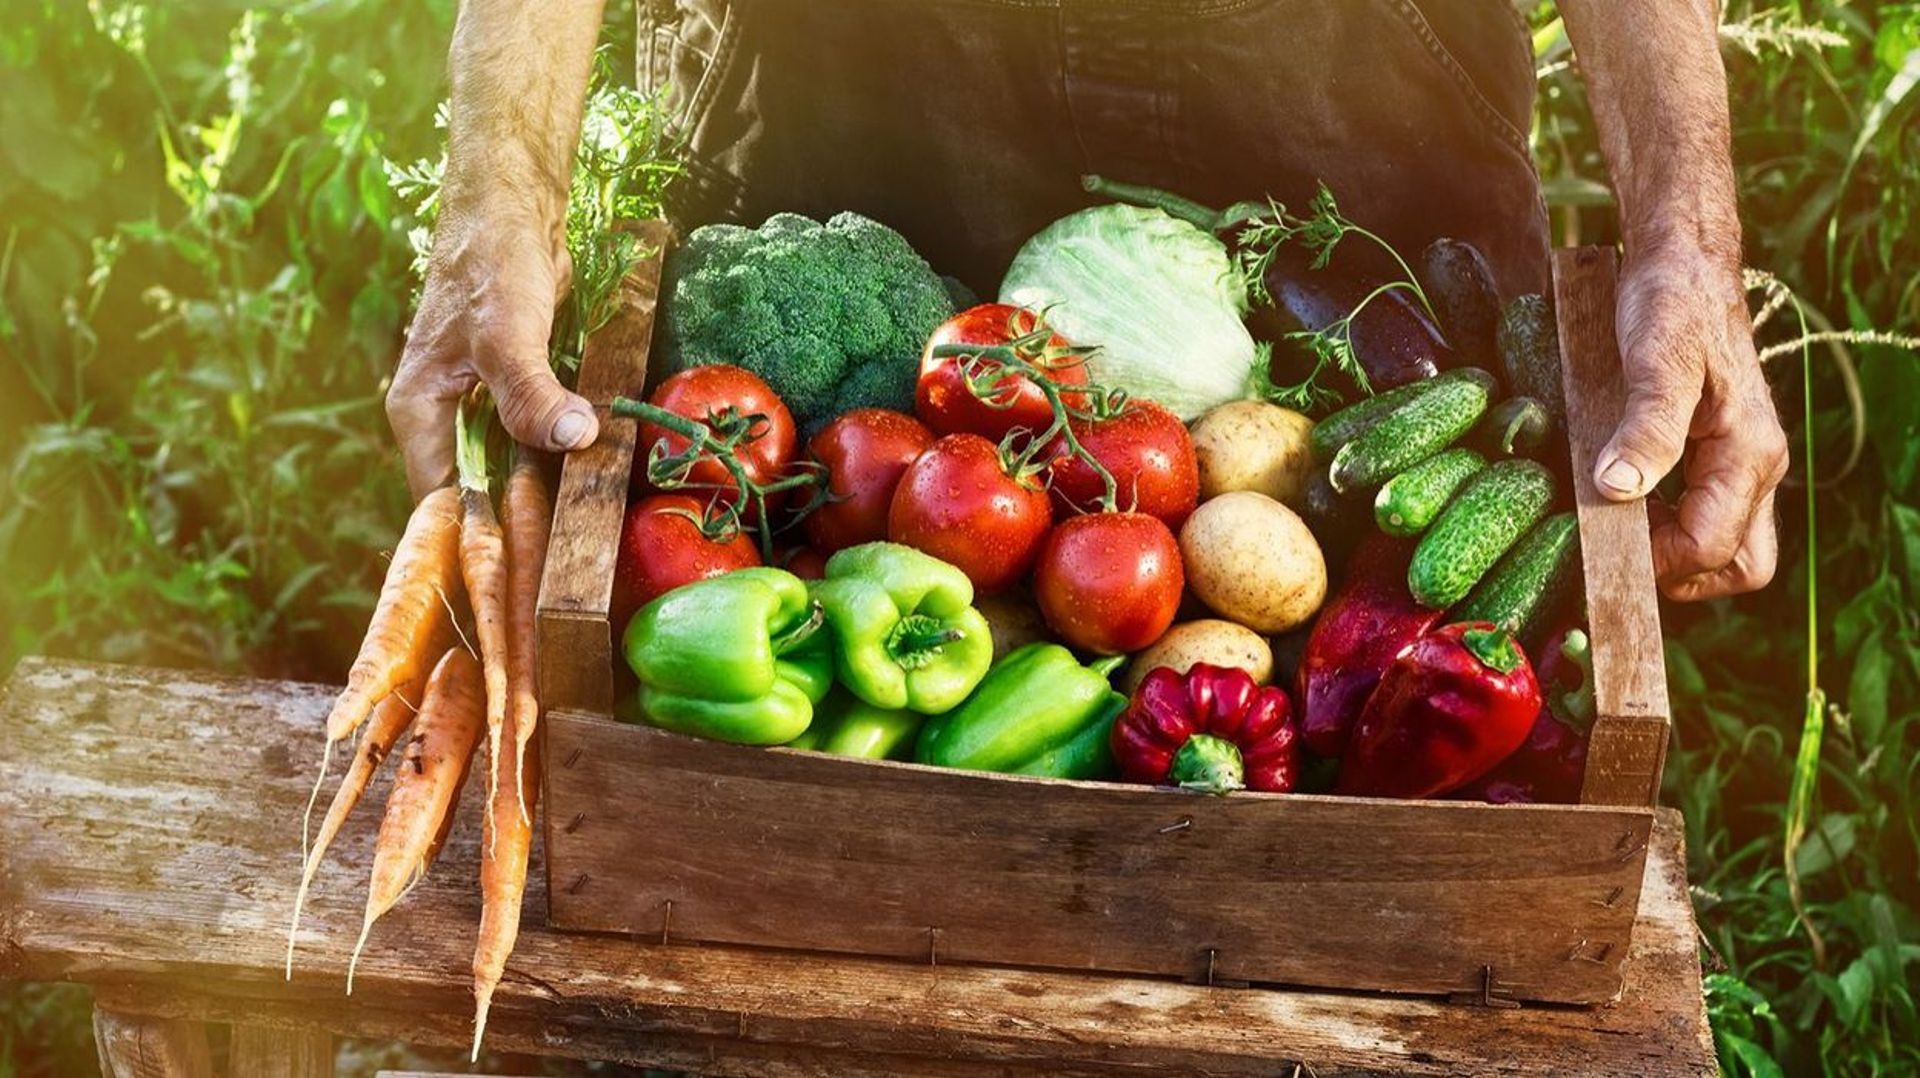 Un nouveau label pour les fruits et légumes frais: "Zéro résidu de pesticides" 